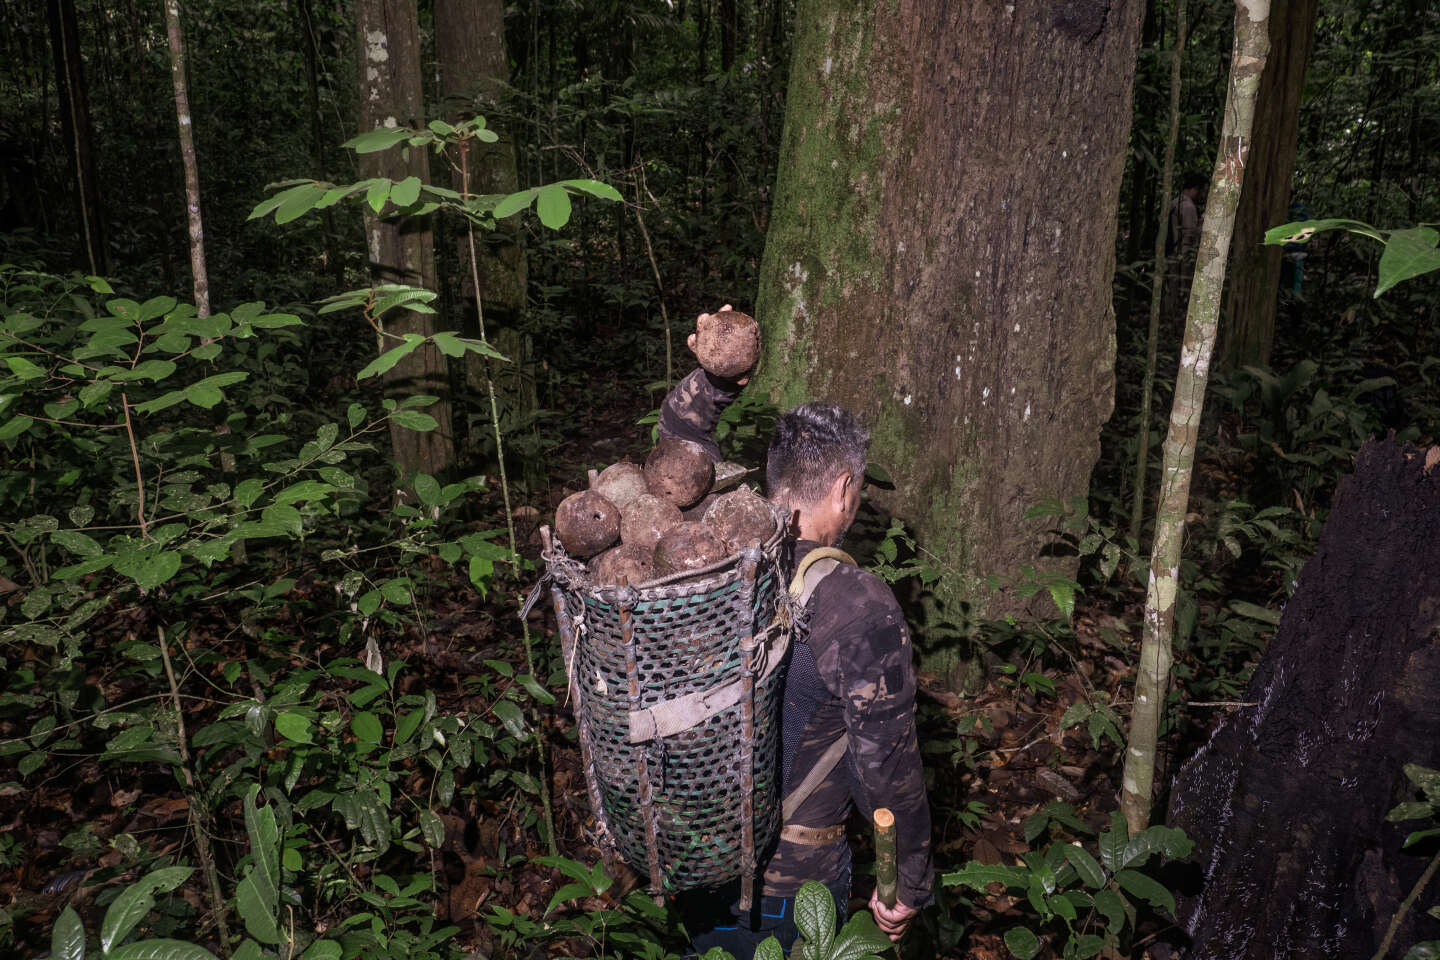 Na Amazônia, a colheita da castanha-do-pará sustenta as populações e preserva a floresta